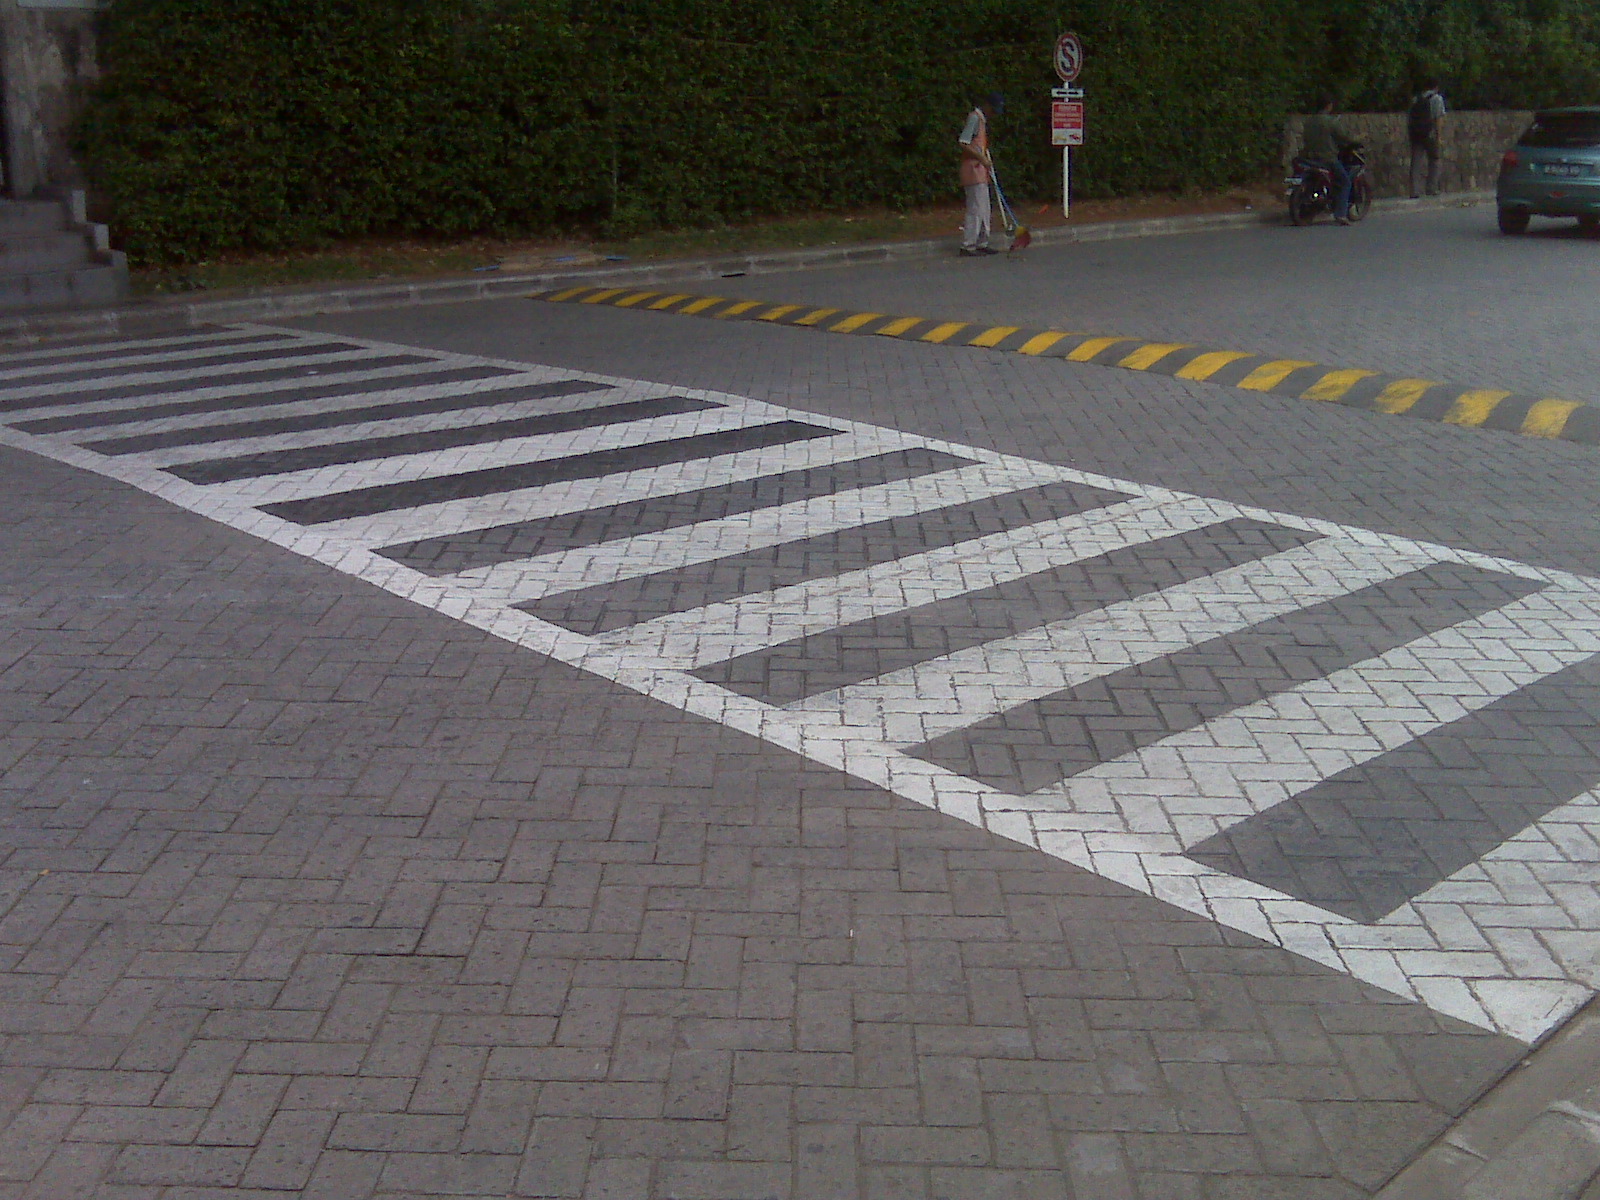 Absurd Avenue: Zebra cross